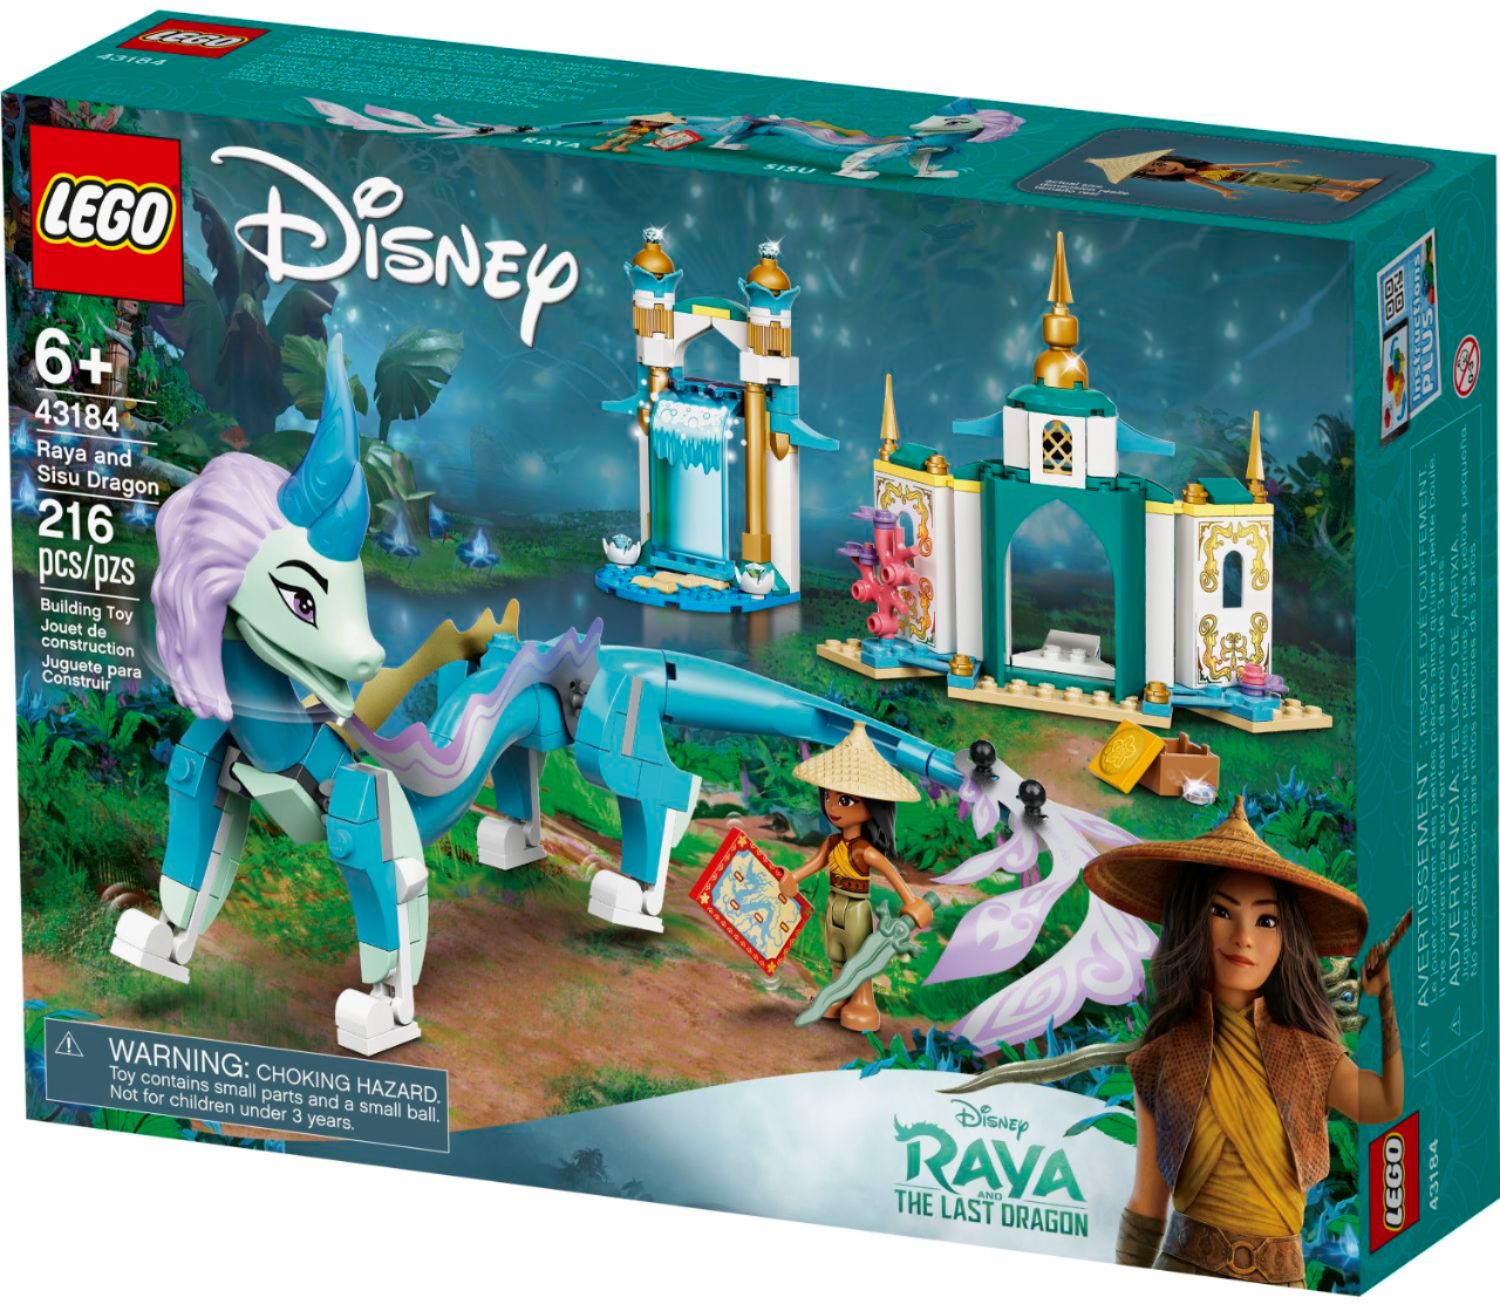 Angle View: LEGO Disney Princess Raya and Sisu Dragon 43184